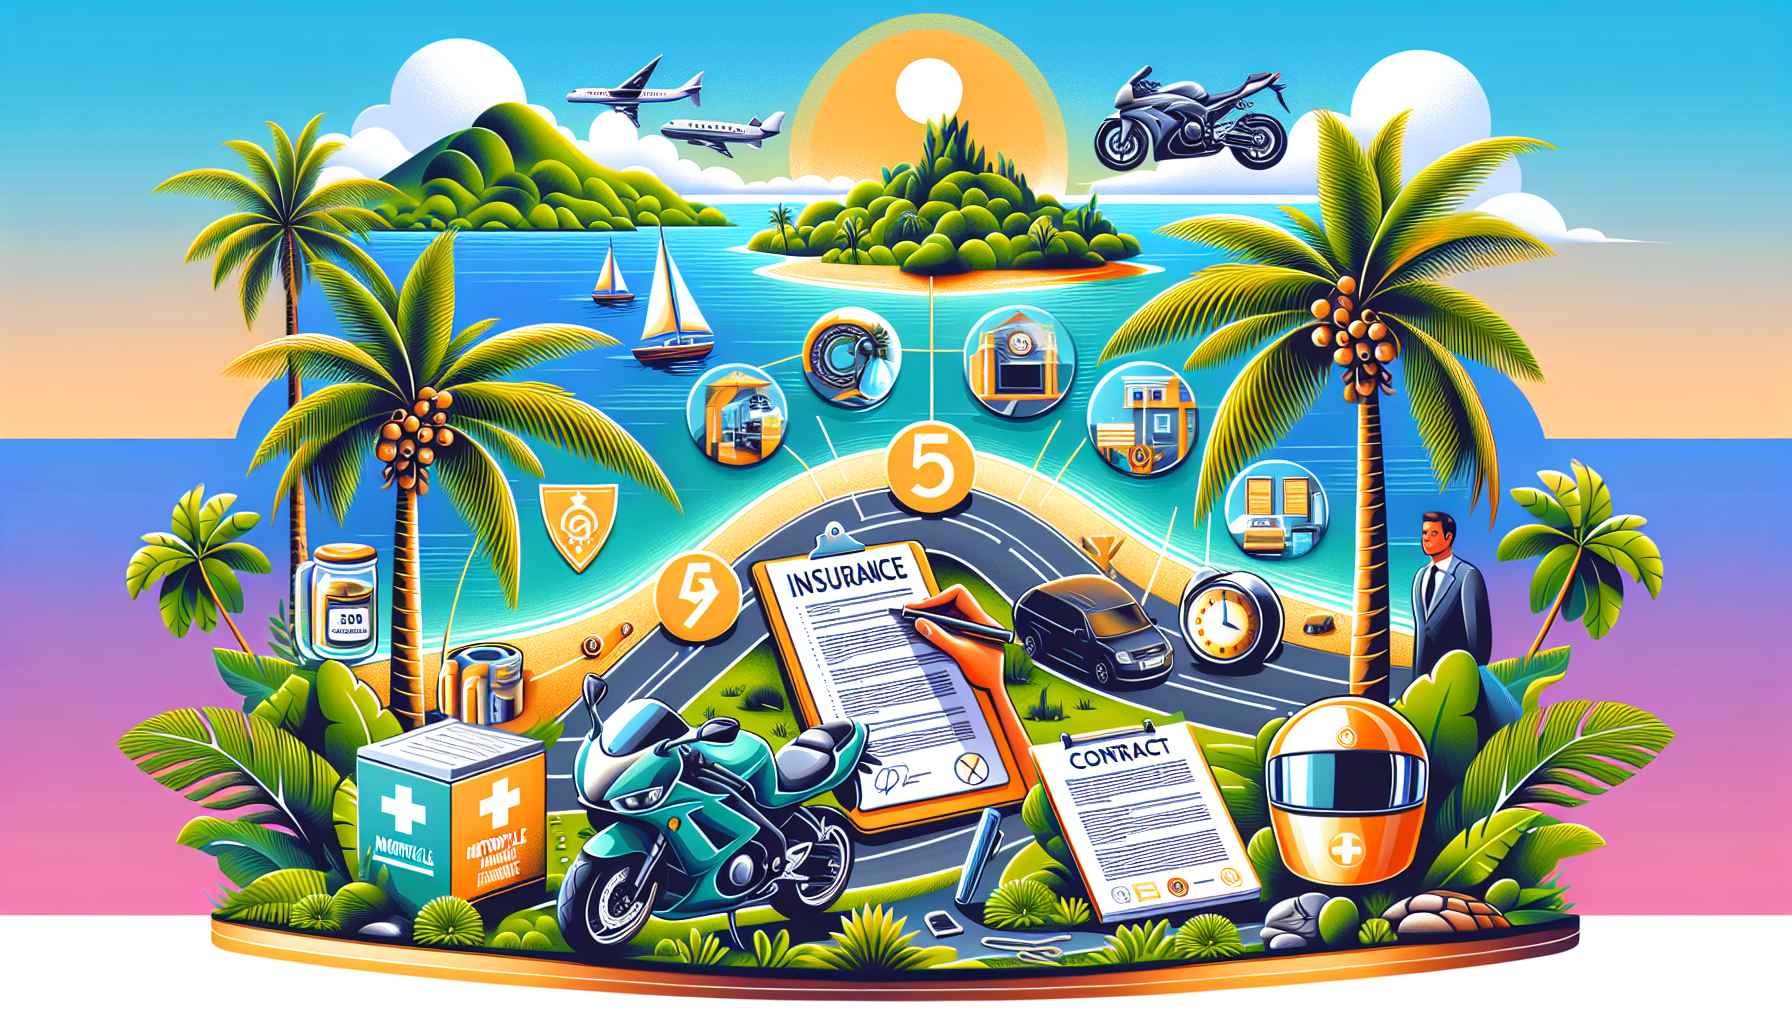 découvrez les étapes à suivre pour assurer votre moto à la réunion avec notre guide complet sur l'assurance moto 974. protégez-vous en toute sérénité sur les routes de l'île.